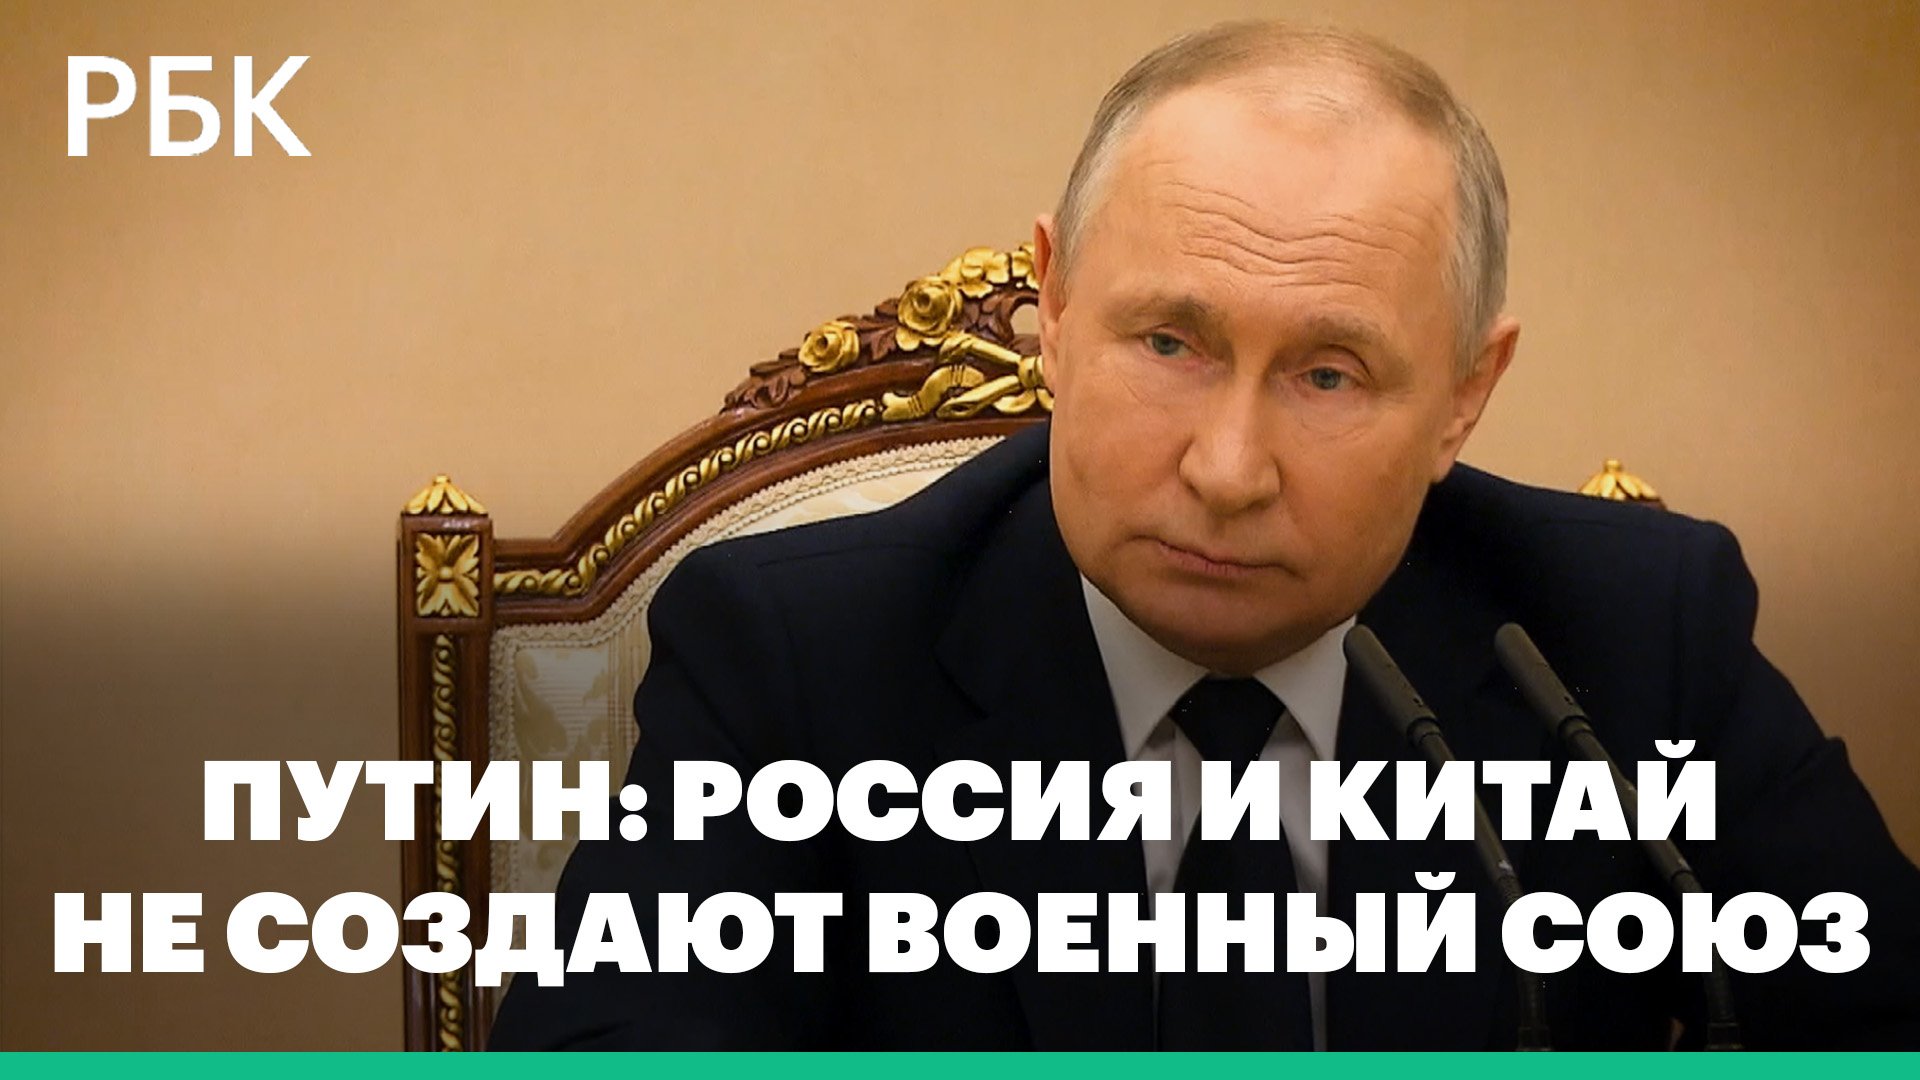 Путин заявил, что Россия и Китай не создают военный союз